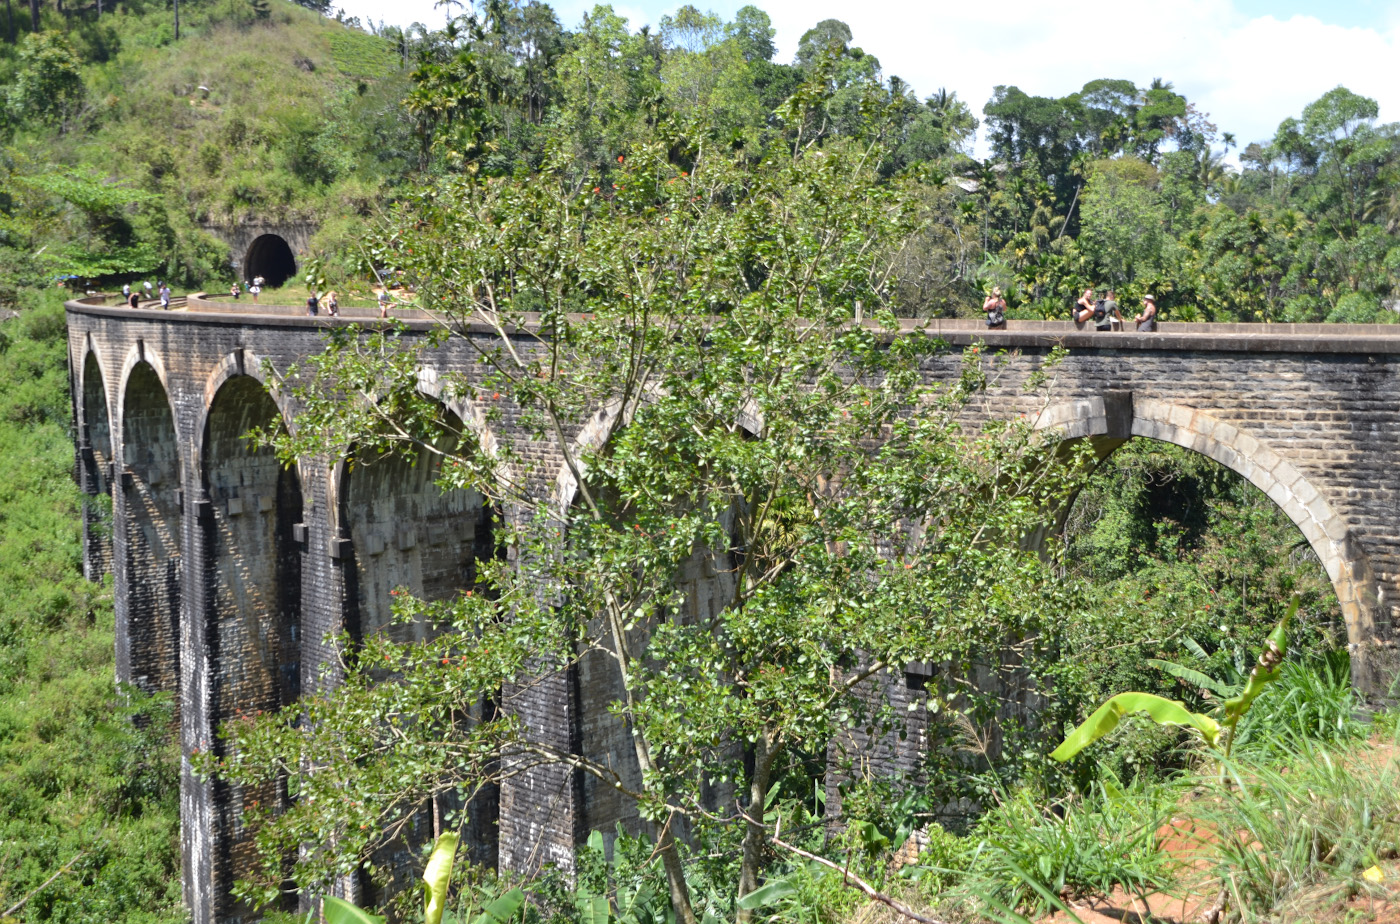 Фотография 20. Девятиарочный мост (Demodara Nine Arch Bridge), который можно посмотреть недалеко от водопада Равана Фолc (Rawana Falls). Отзывы об экскурсиях из Унаватуны по Шри-Ланке на машине с водителем. 1/250, 8.0, 100, 55.